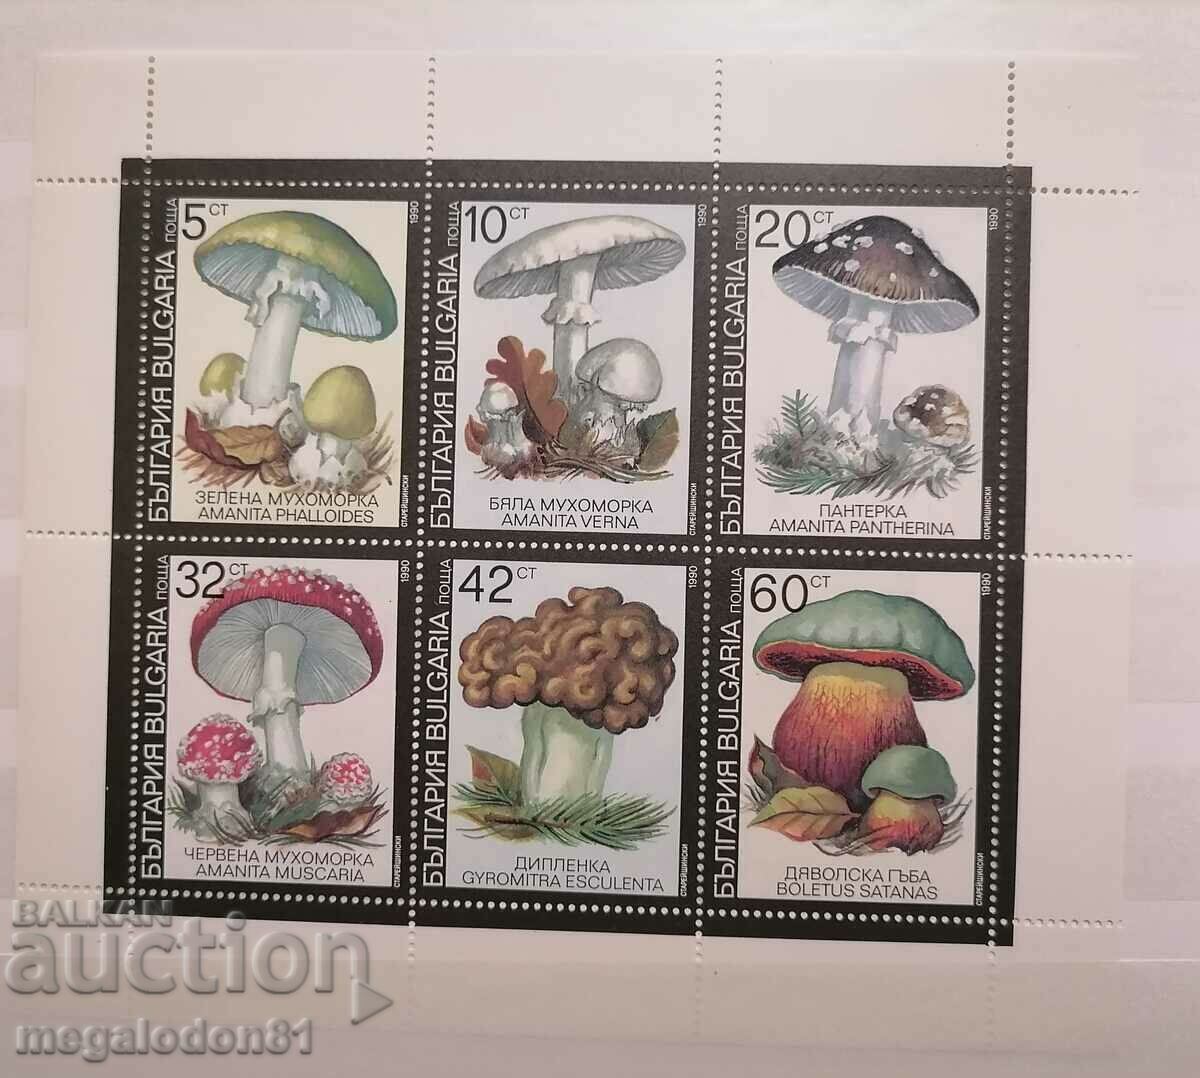 Bulgaria - poisonous mushrooms, 1991